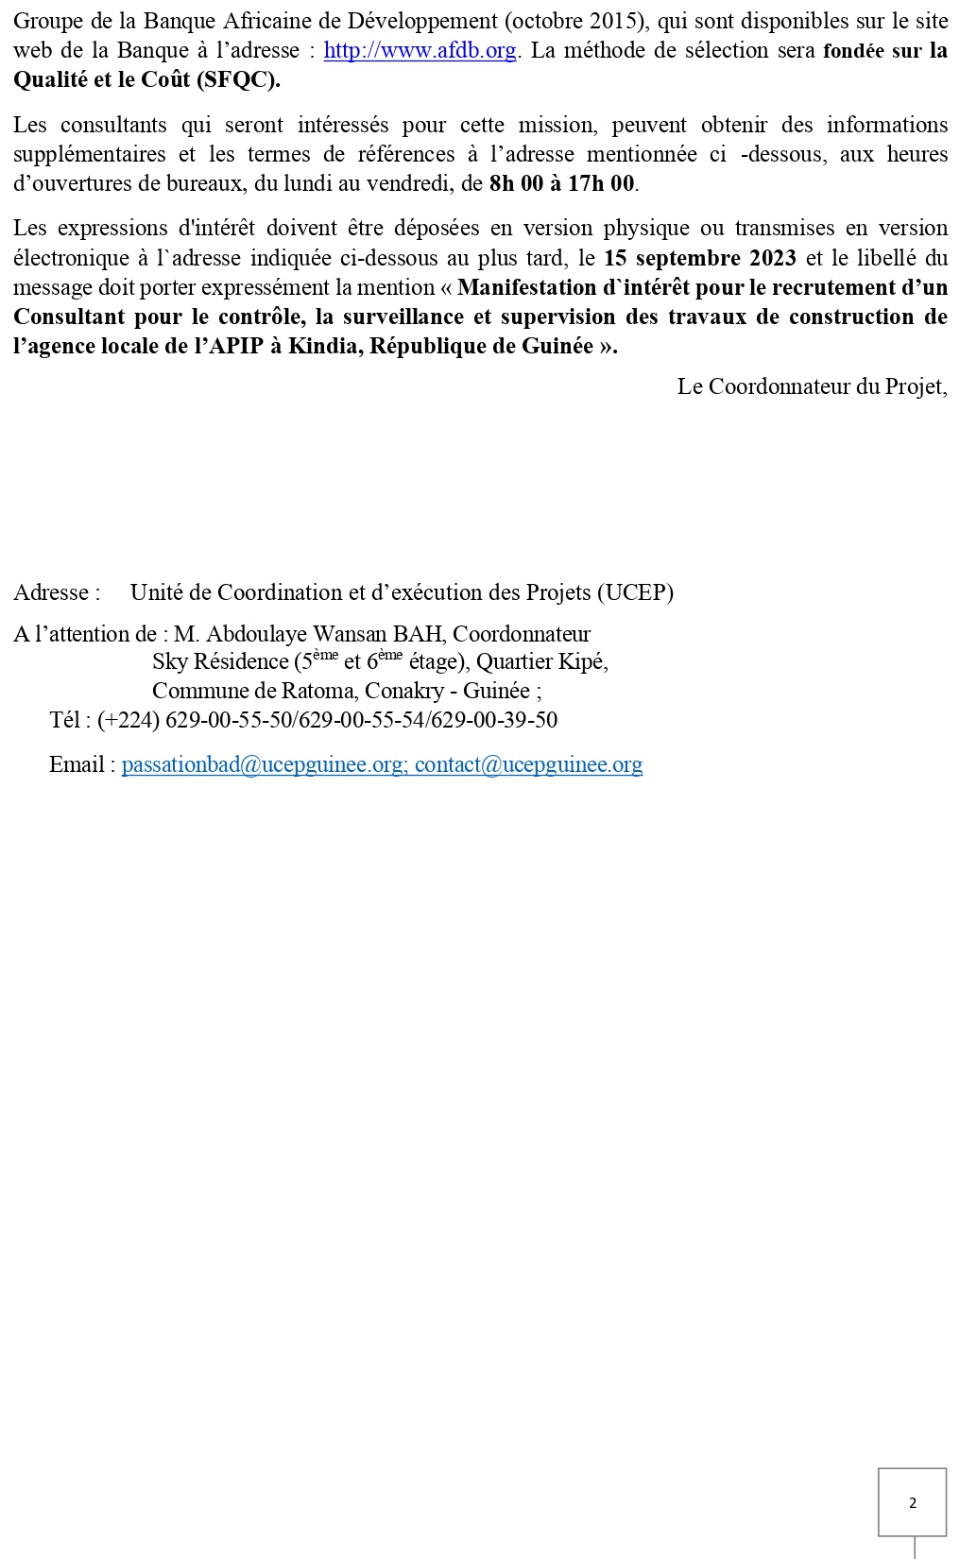 Avis à manifestation d’intérêt pour le Recrutement d’un Consultant (firme) pour le contrôle, la surveillance et la supervision des travaux de construction de l’agence locale de l’APIP à Kindia (Guinée) | page 2